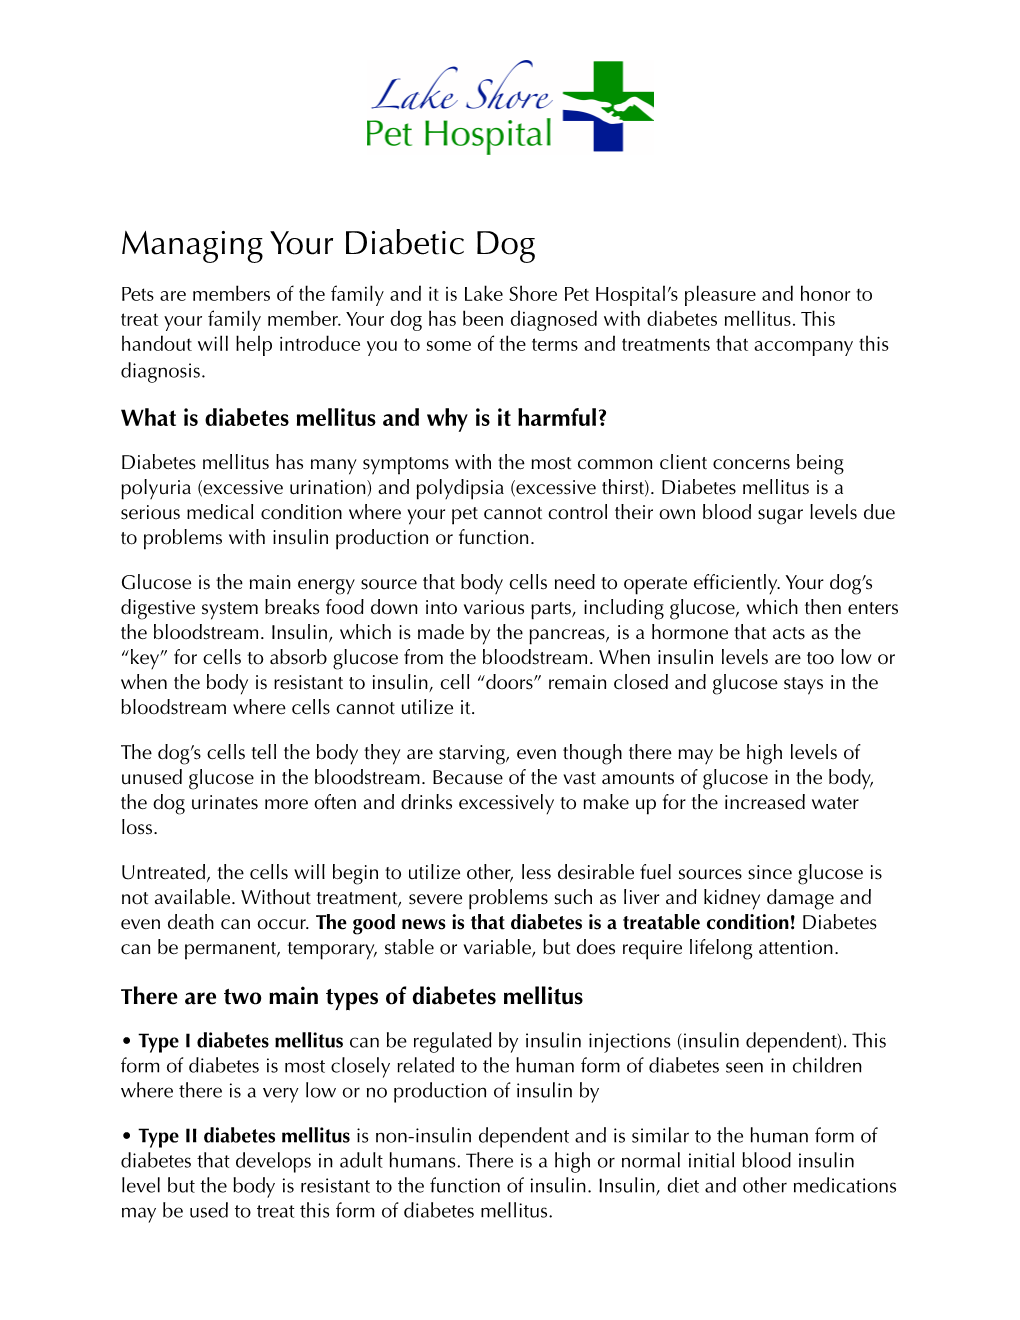 Diabetic Dog Handout